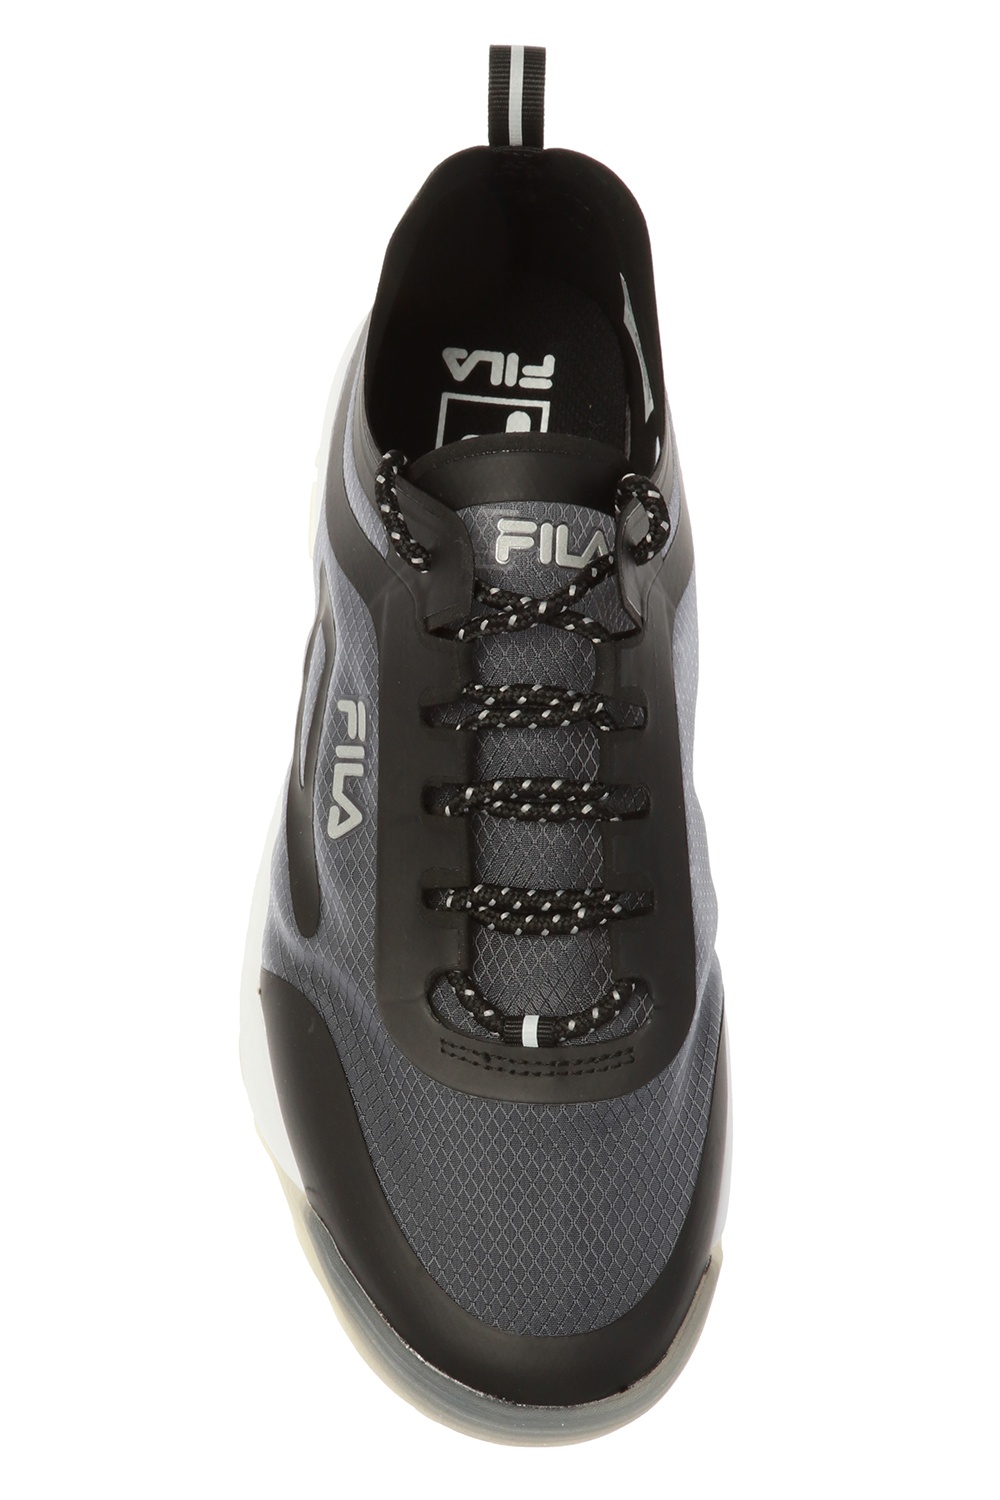 IetpShops | Men's Shoes | jackets Fila dls foam кроссовки | jackets Fila Run' sneakers